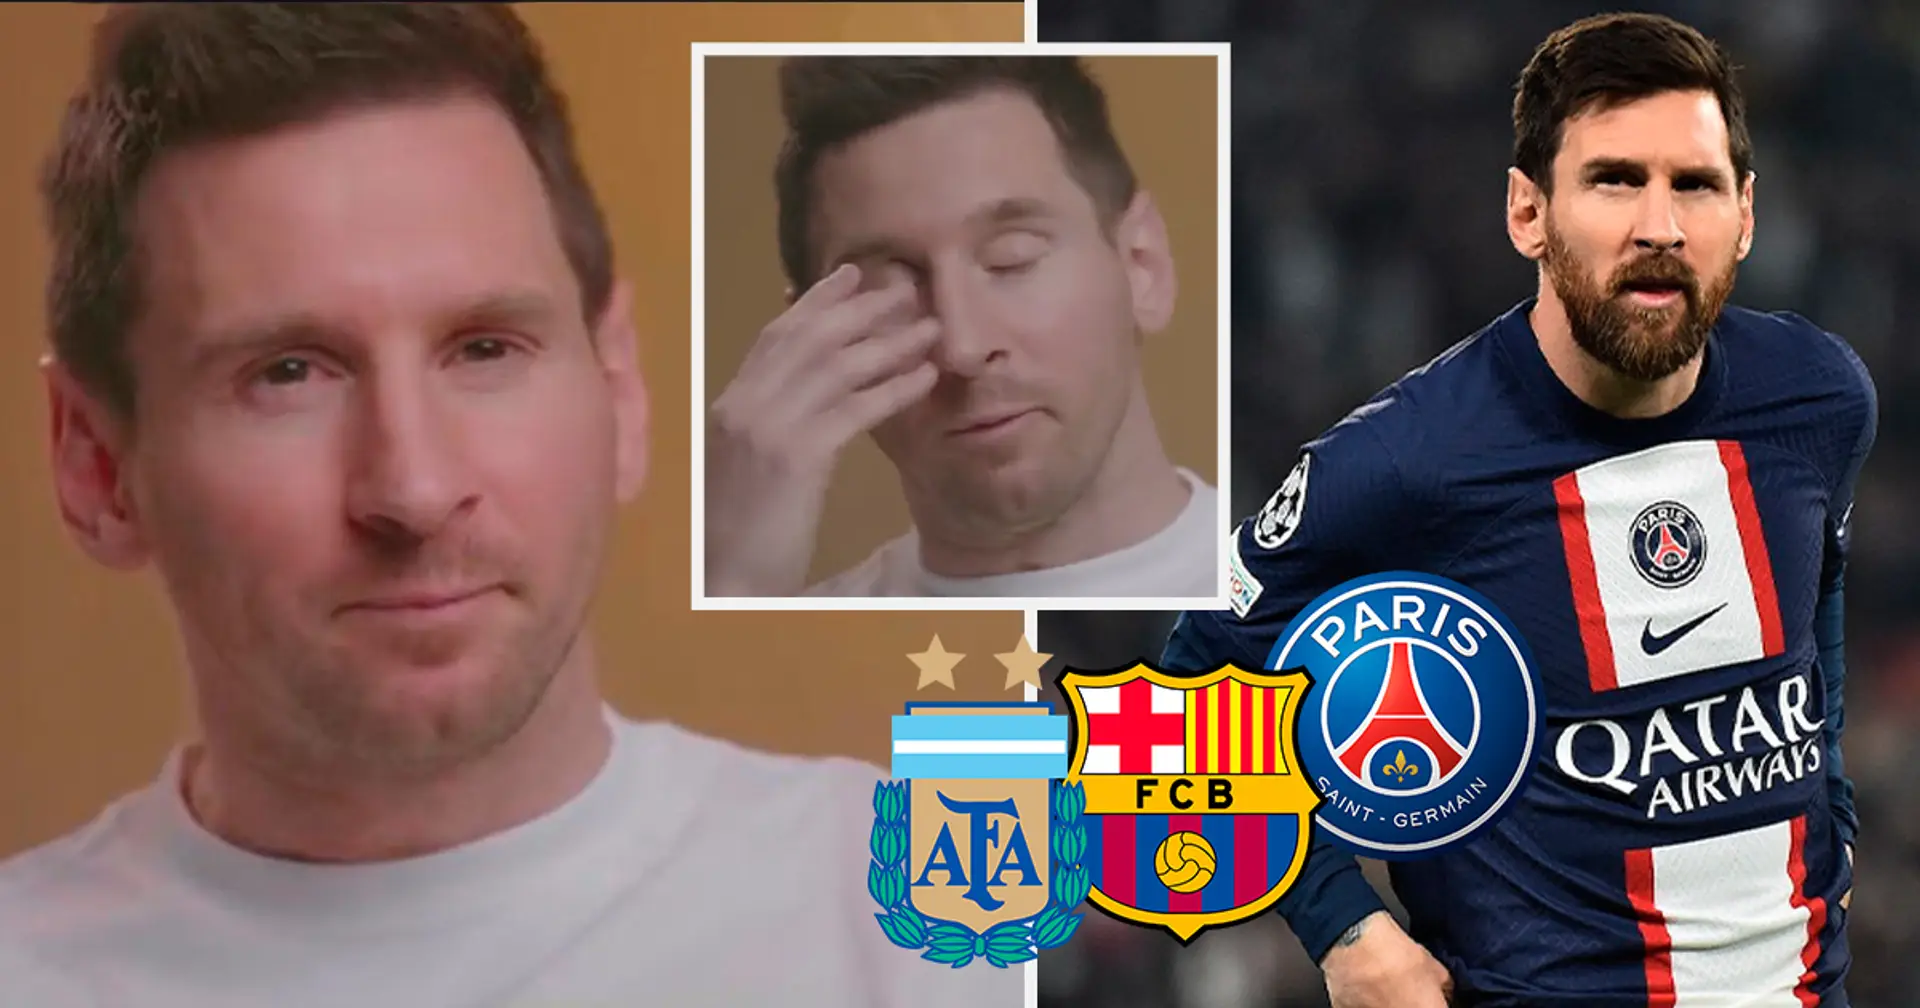 "La plus belle chose qui me soit arrivée": Messi fond en larmes et révèle le plus beau moment de sa carrière